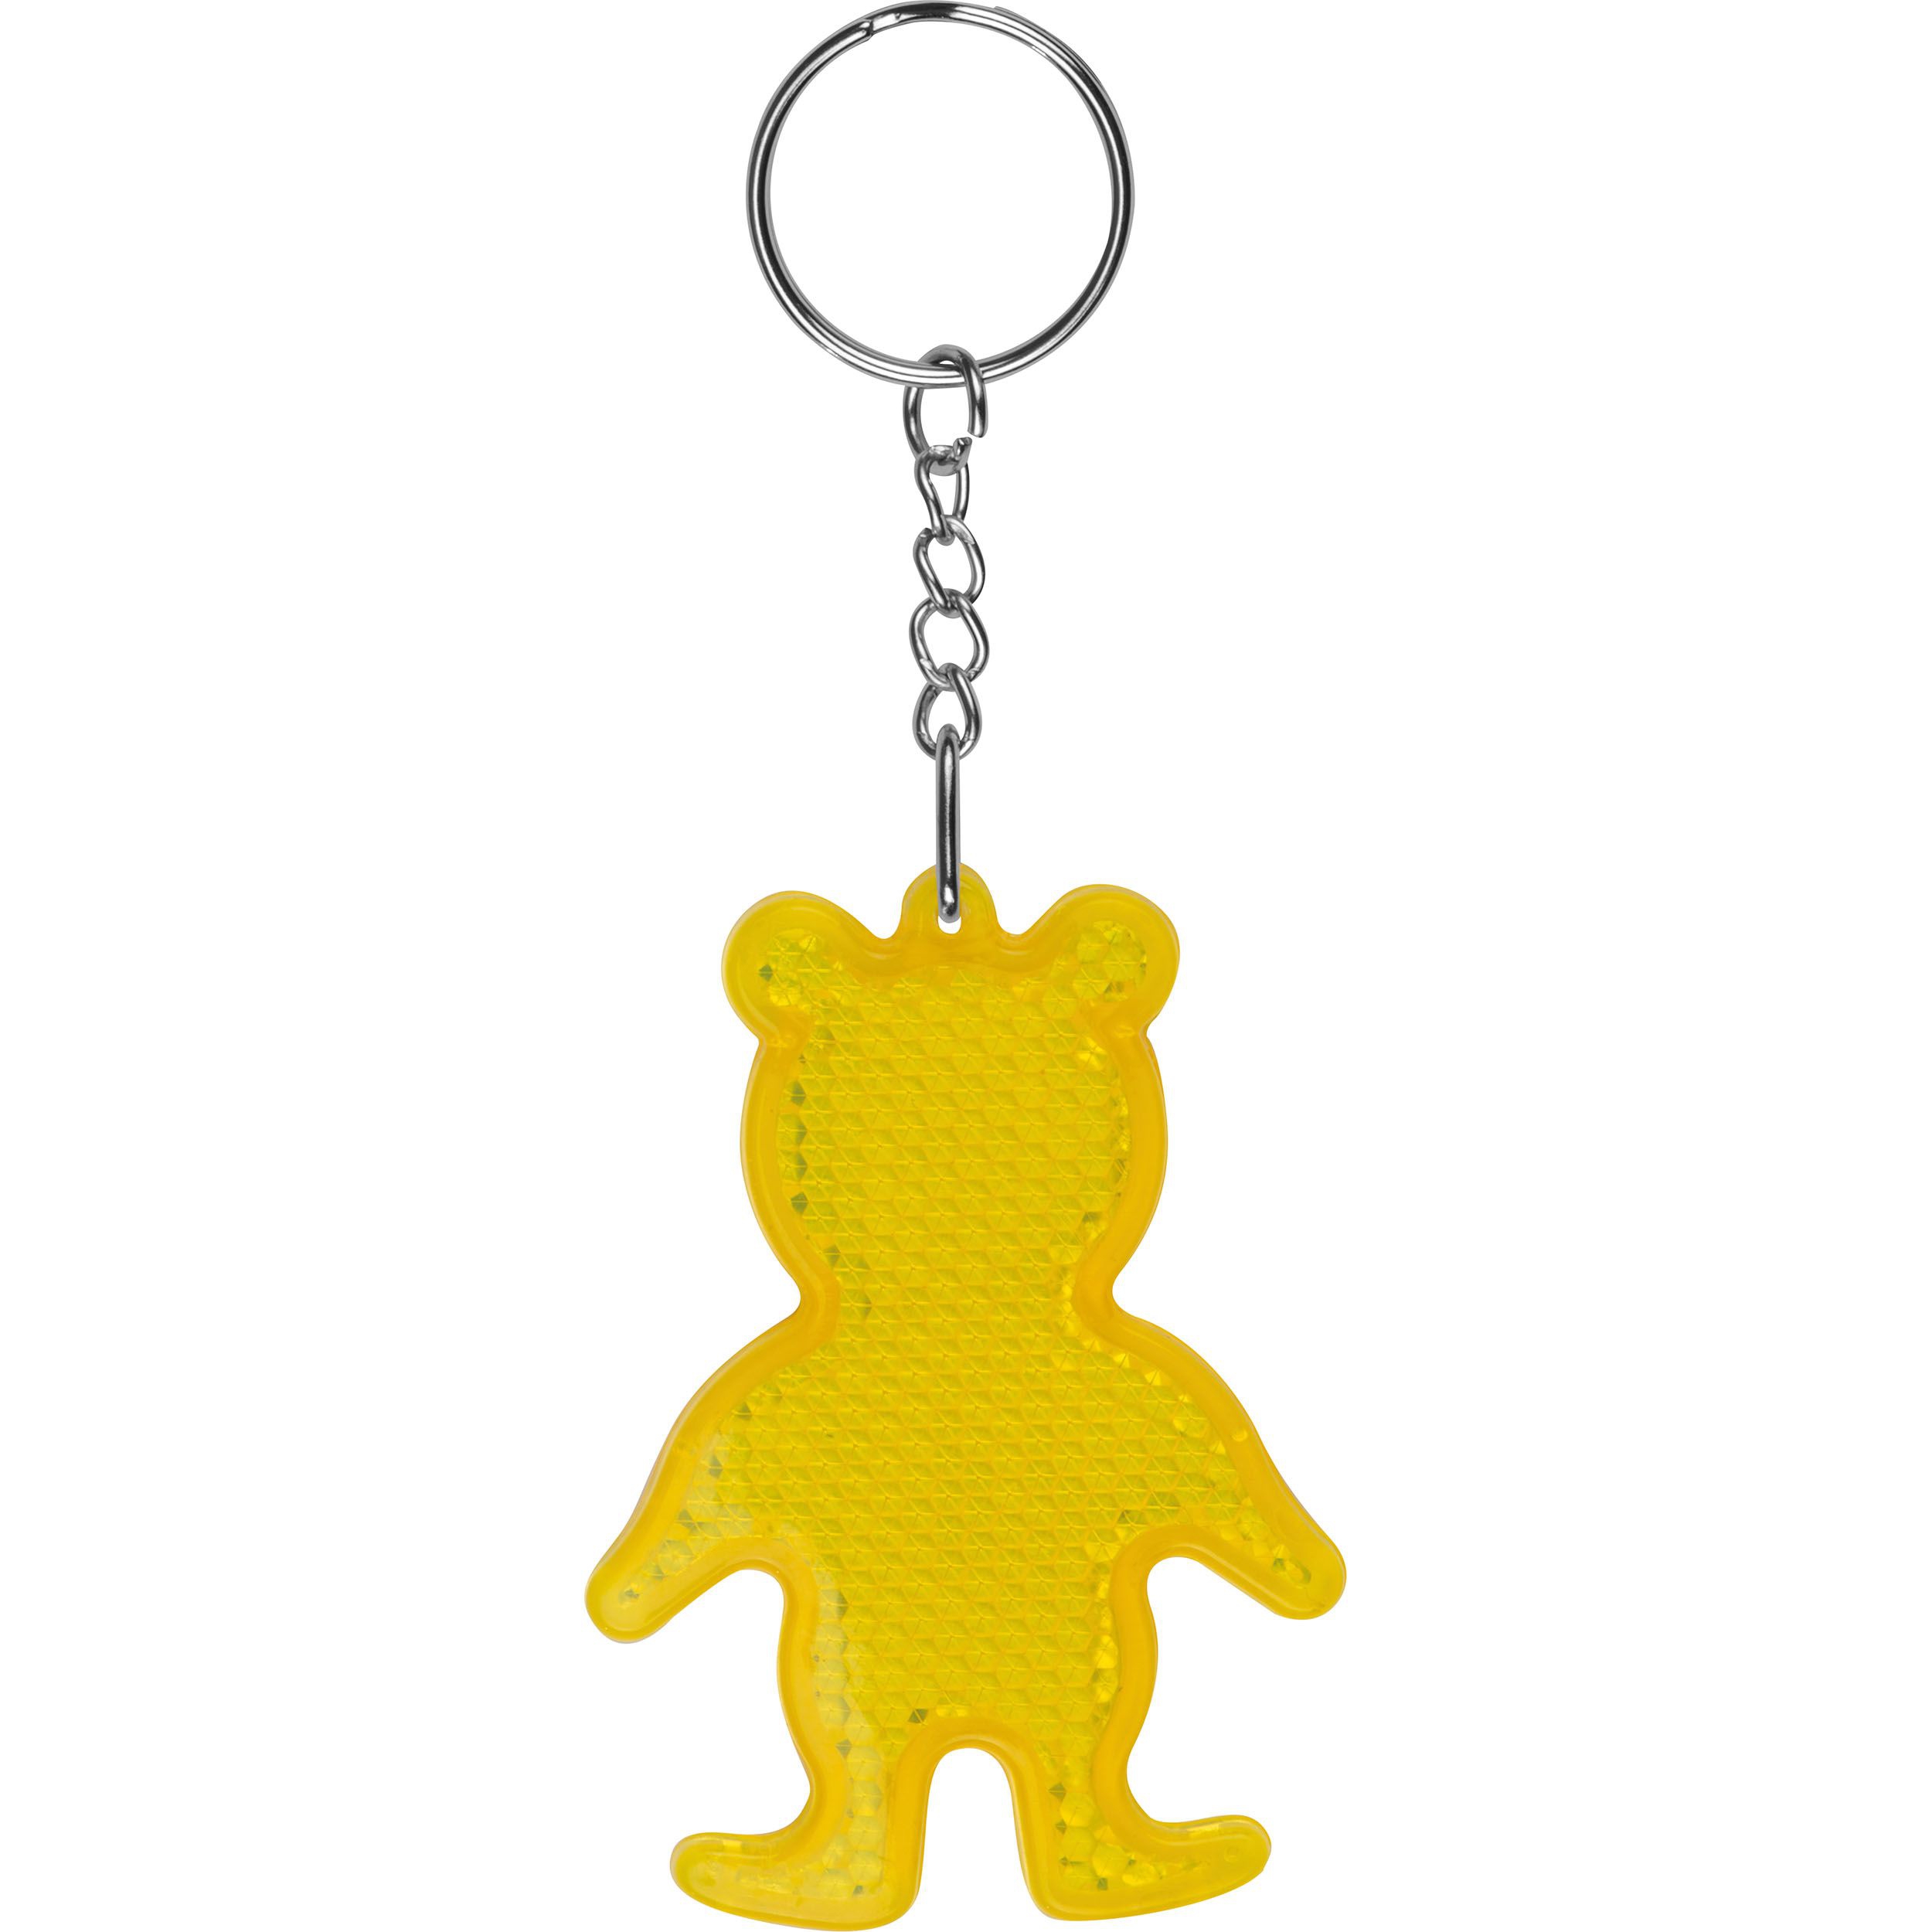 Reflektierender Schlüsselanhänger "Bär", gelb